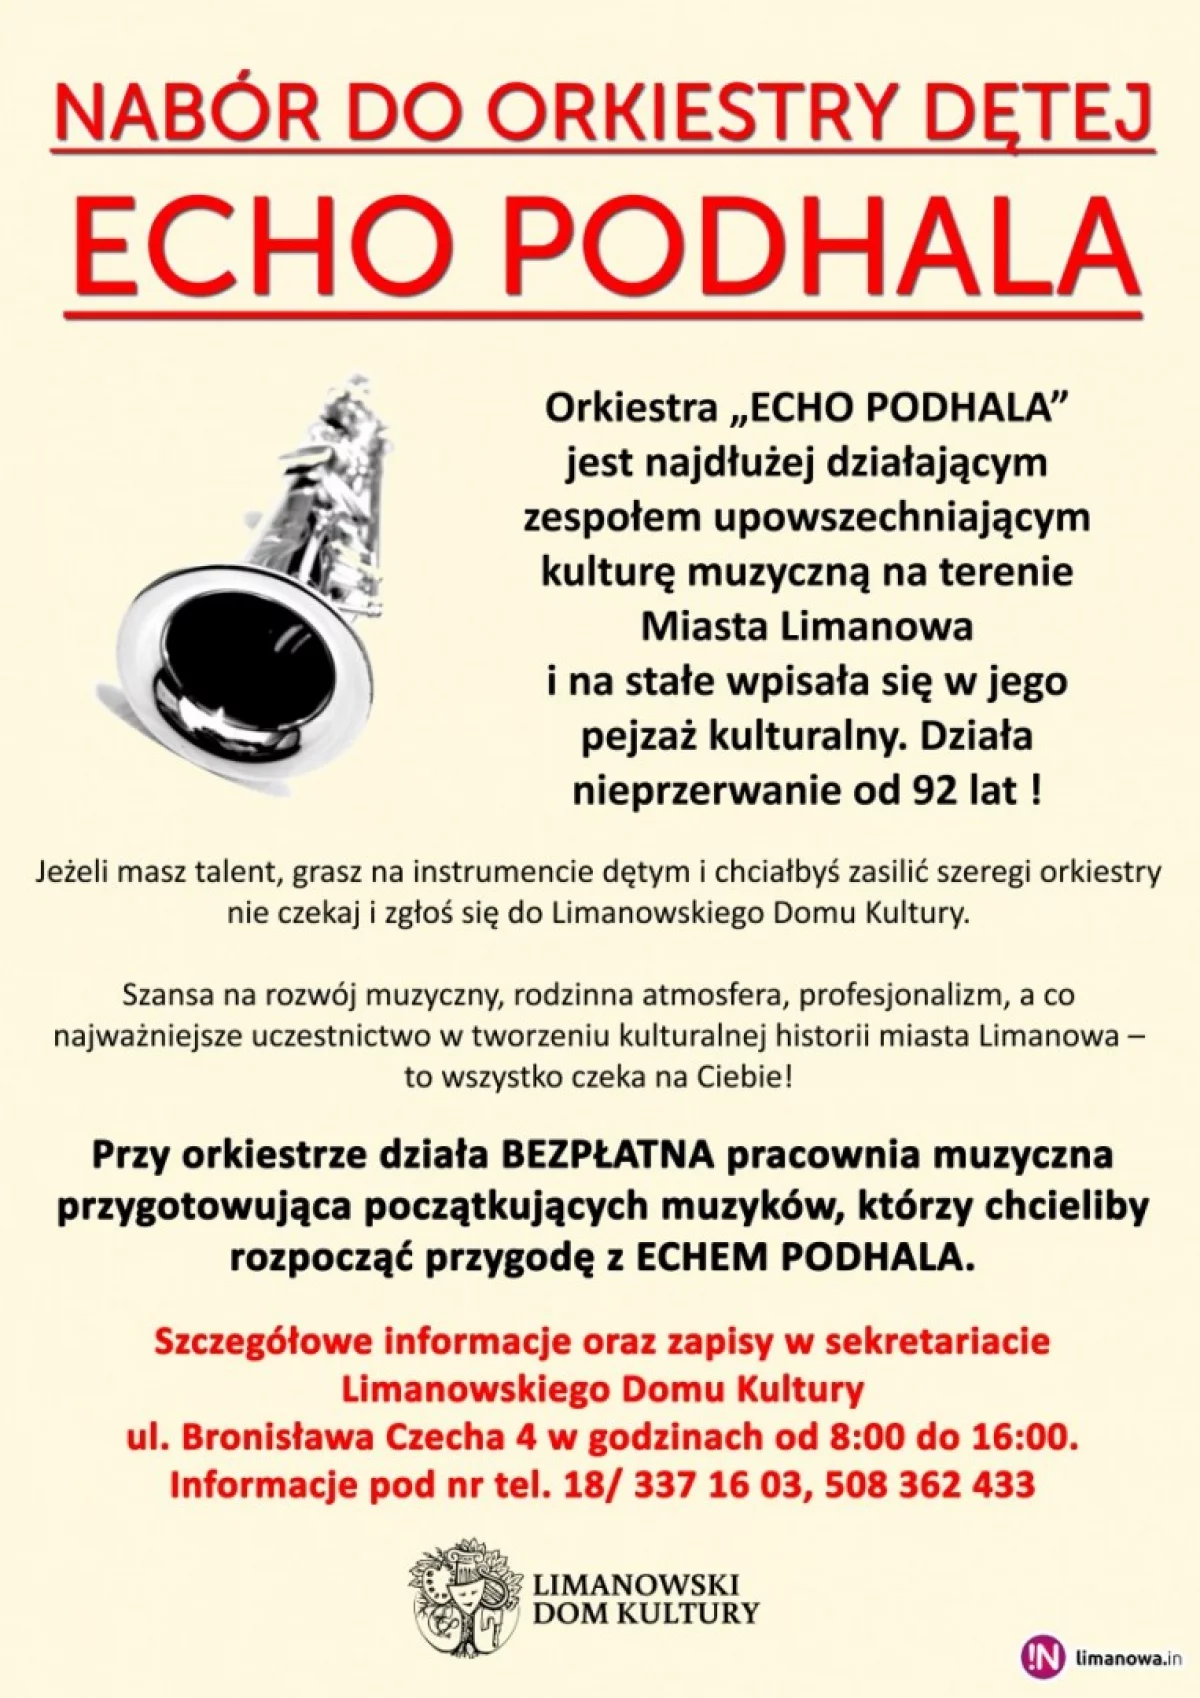 Nabór do orkiestry dętej Echo Podhala